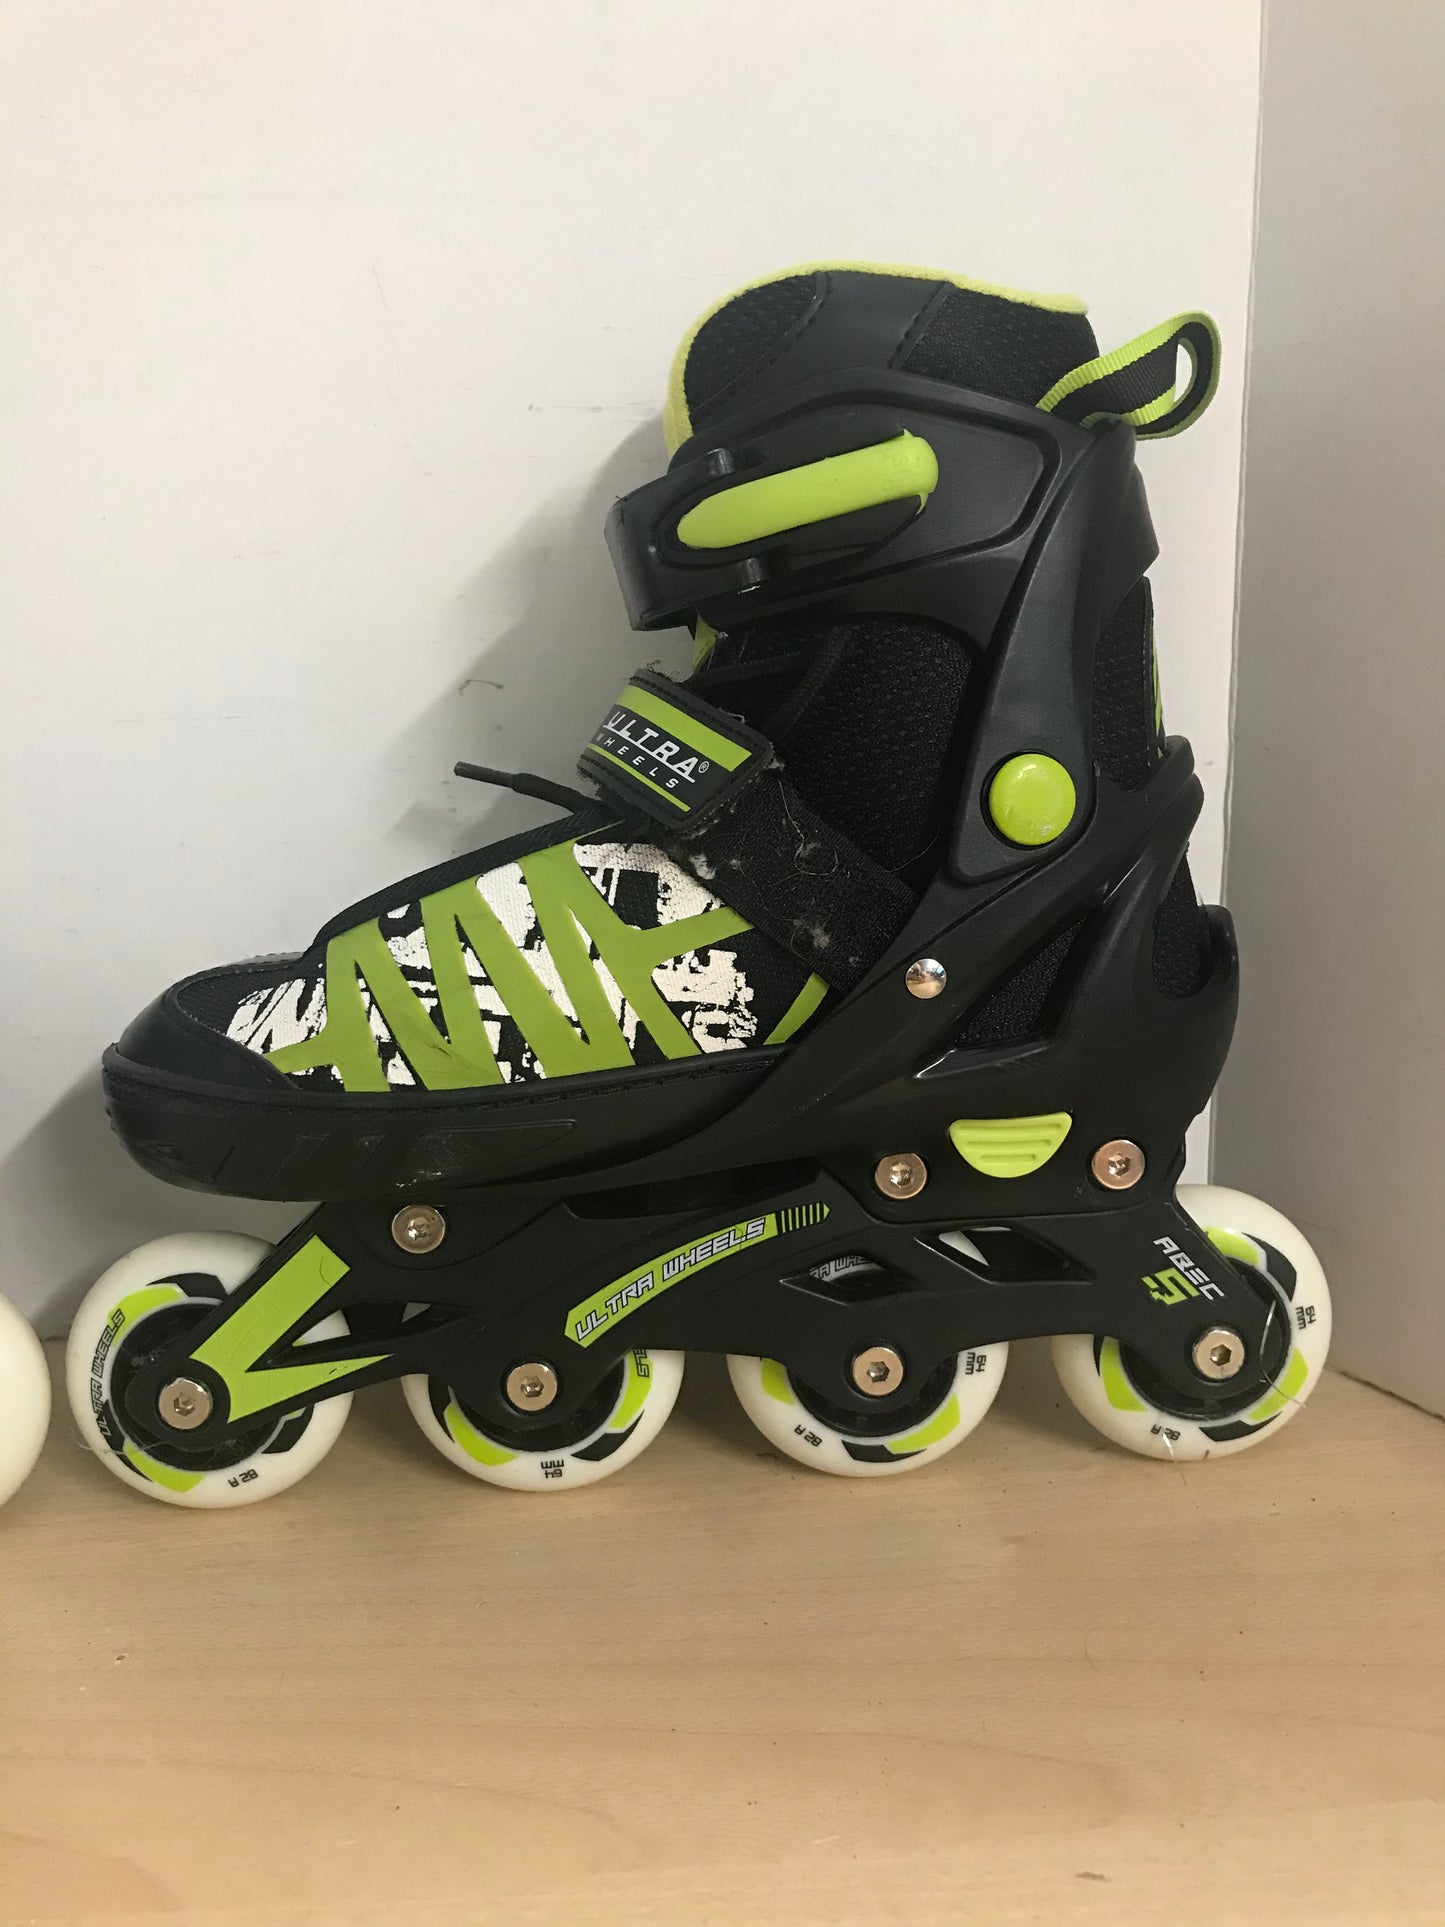 Inline Roller Skates Child Size 1-4 Ultra Wheels Adjustable Rubber Wheels Black Lime Excellent